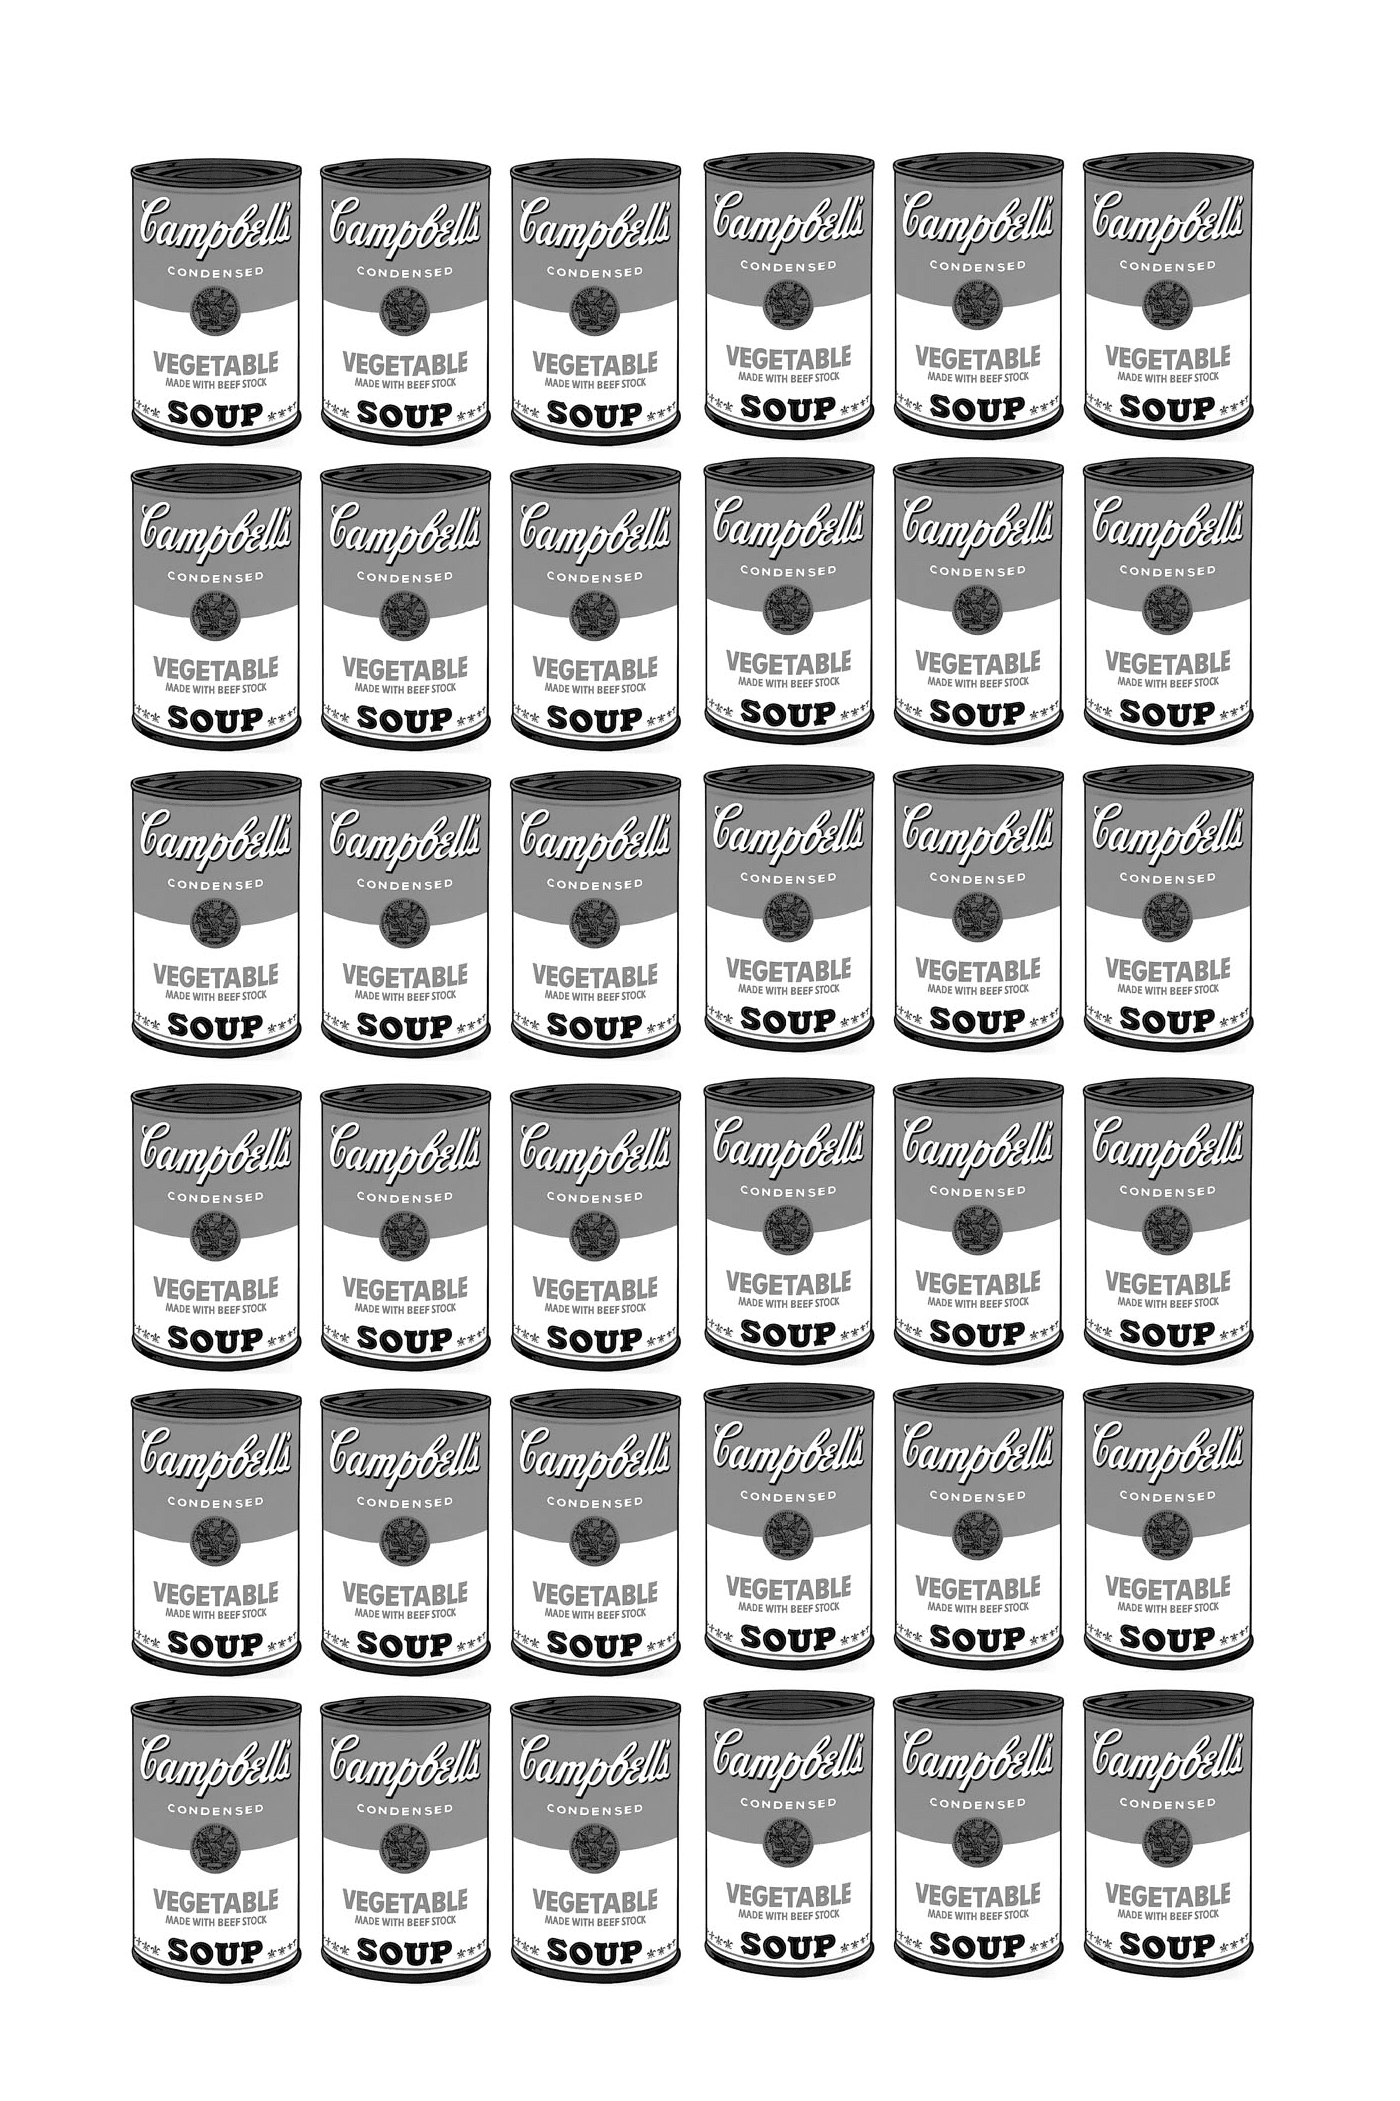  una serie di scatole di zuppa Campbell interamente in bianco e nero secondo Warhol 